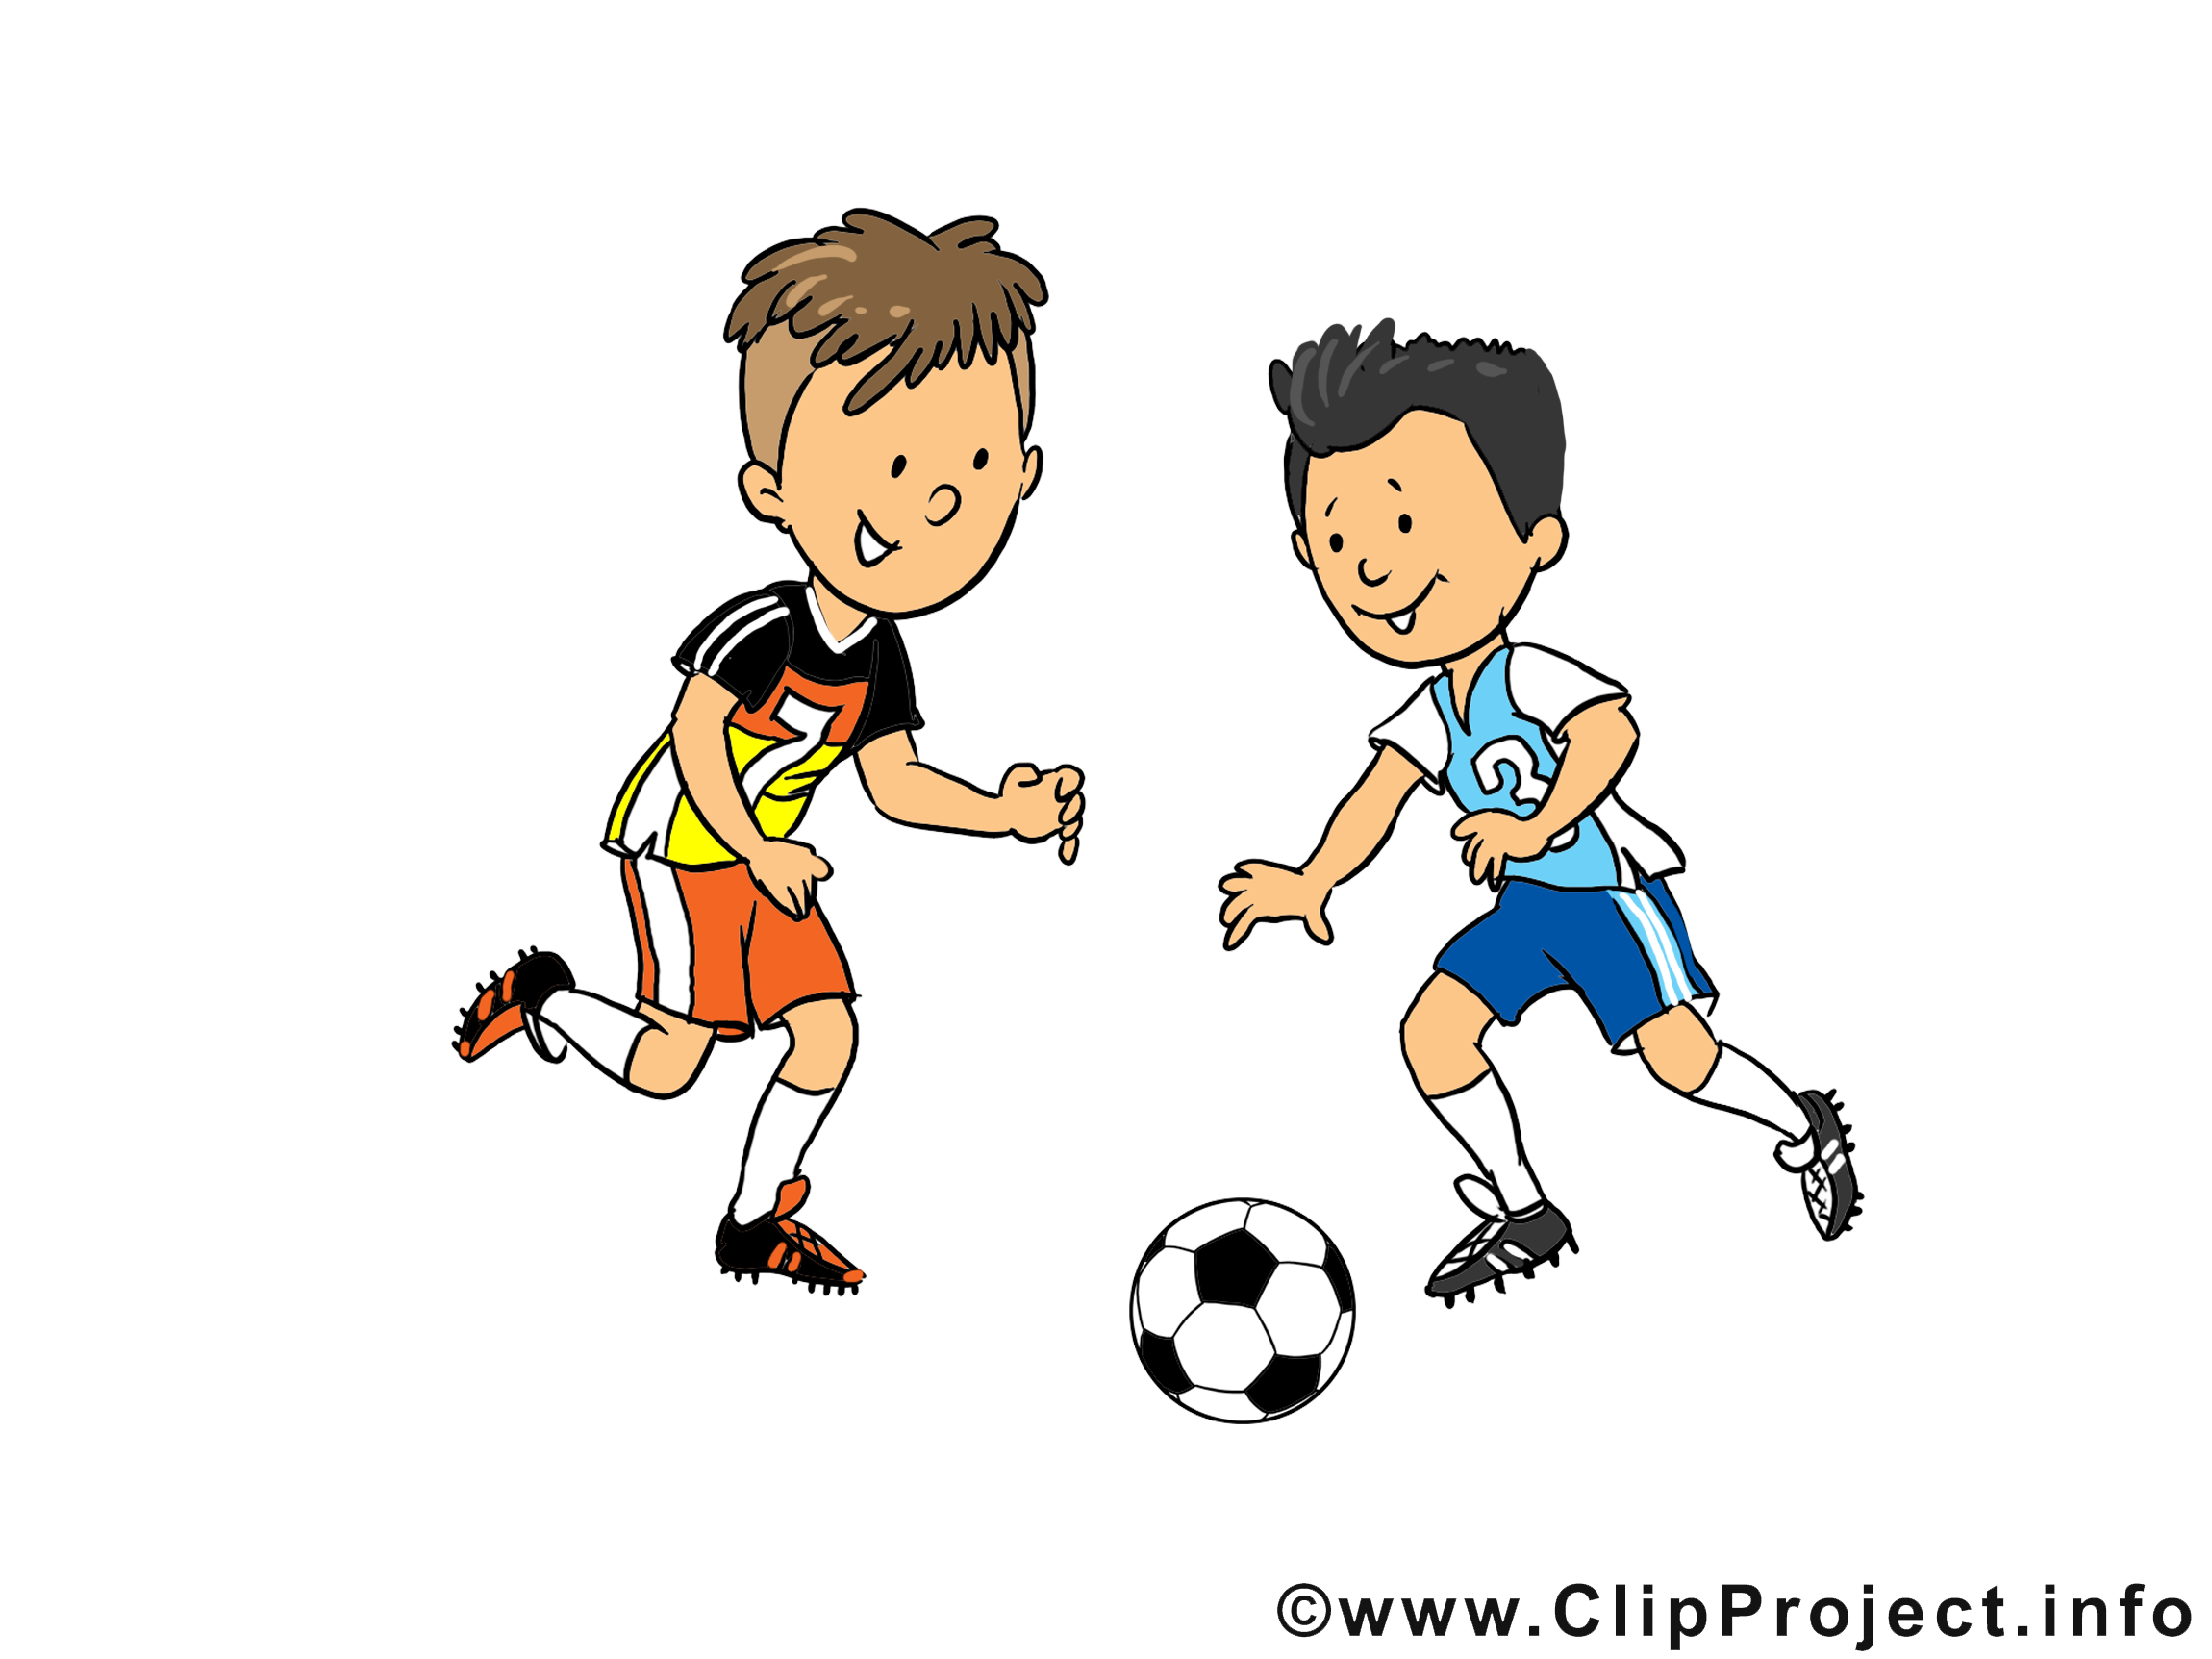 clipart sport telechargement gratuit - photo #41